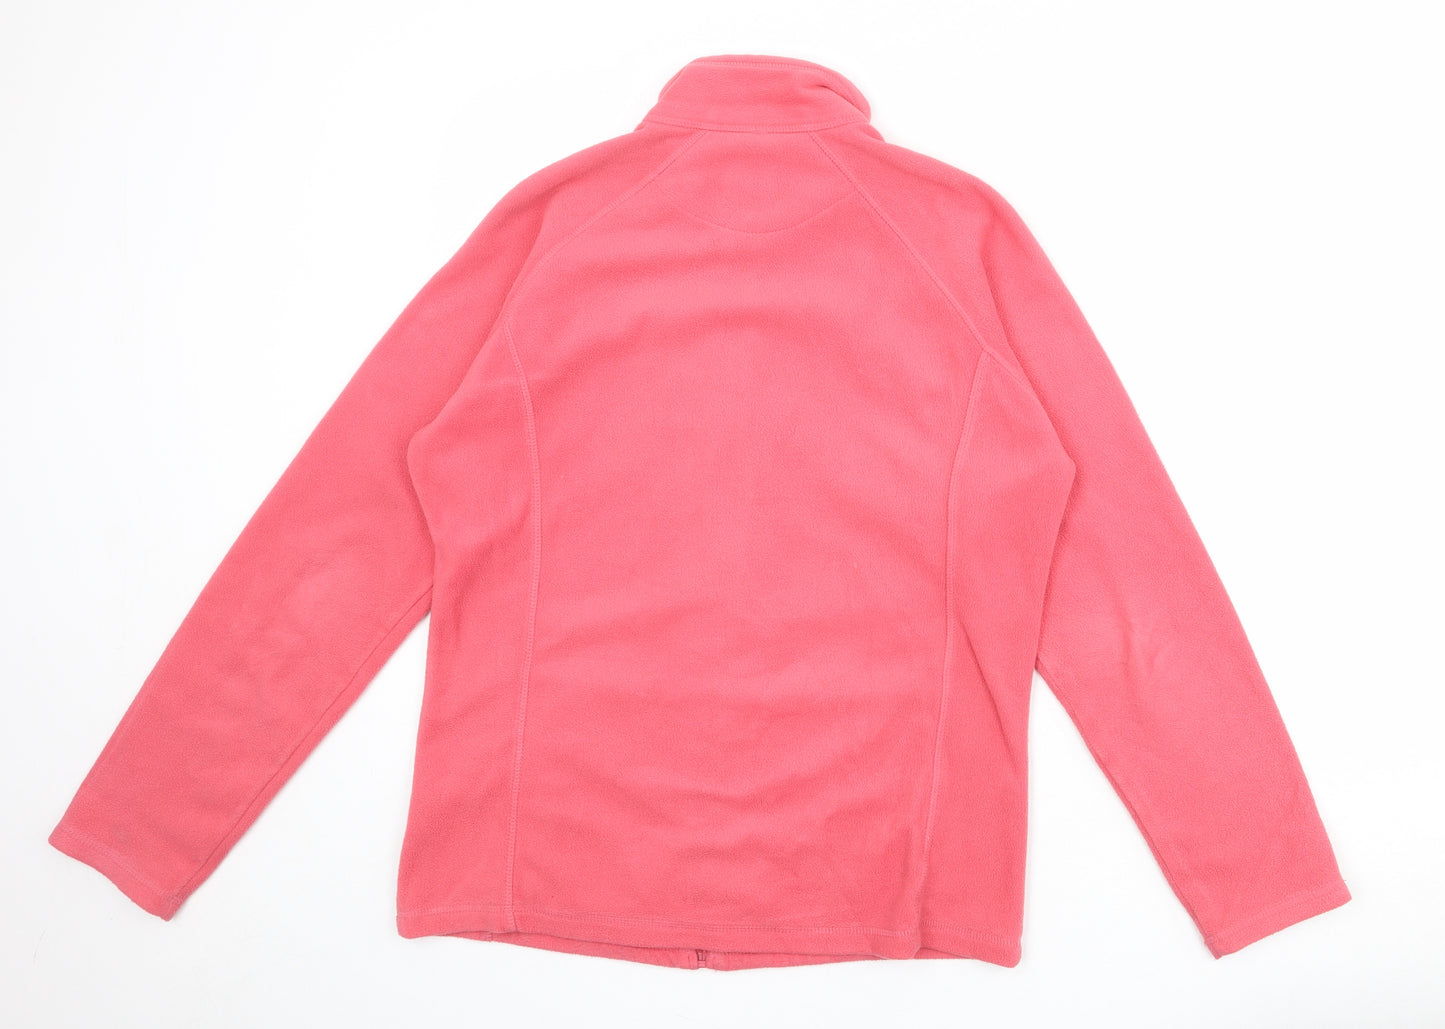 EWM Womens Pink Jacket Size M Zip